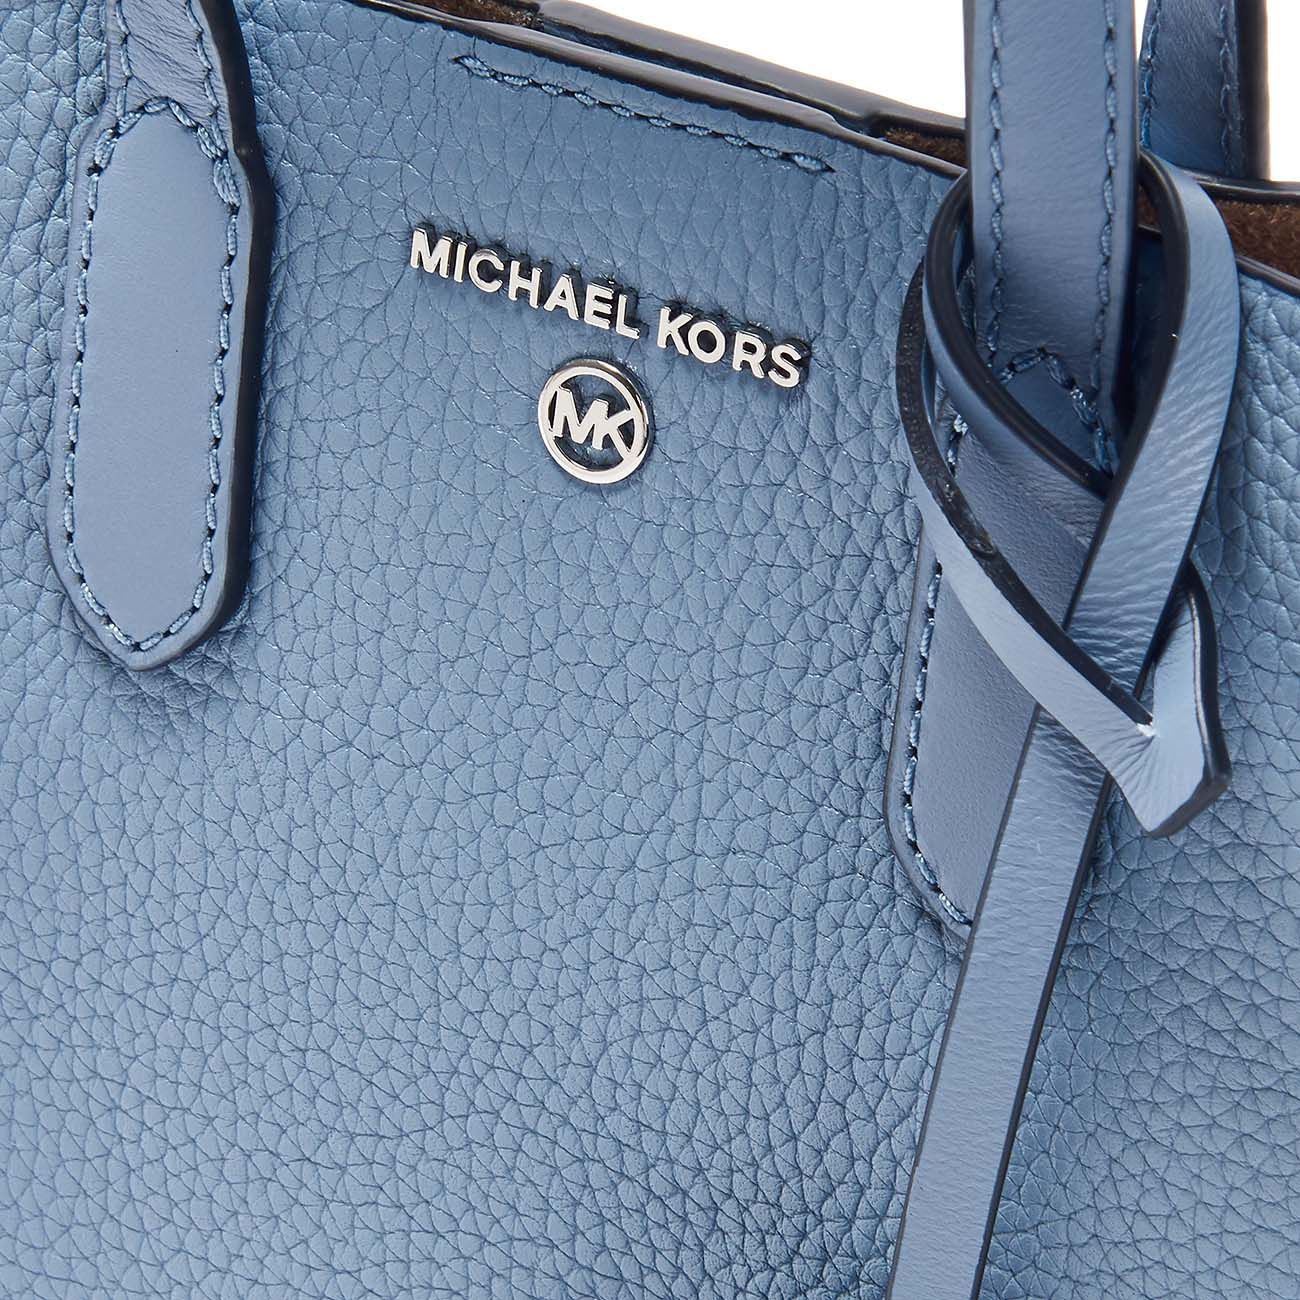 Michael Kors Tote Bag Purse Blush Gold Large Shoulder Bag Shopper